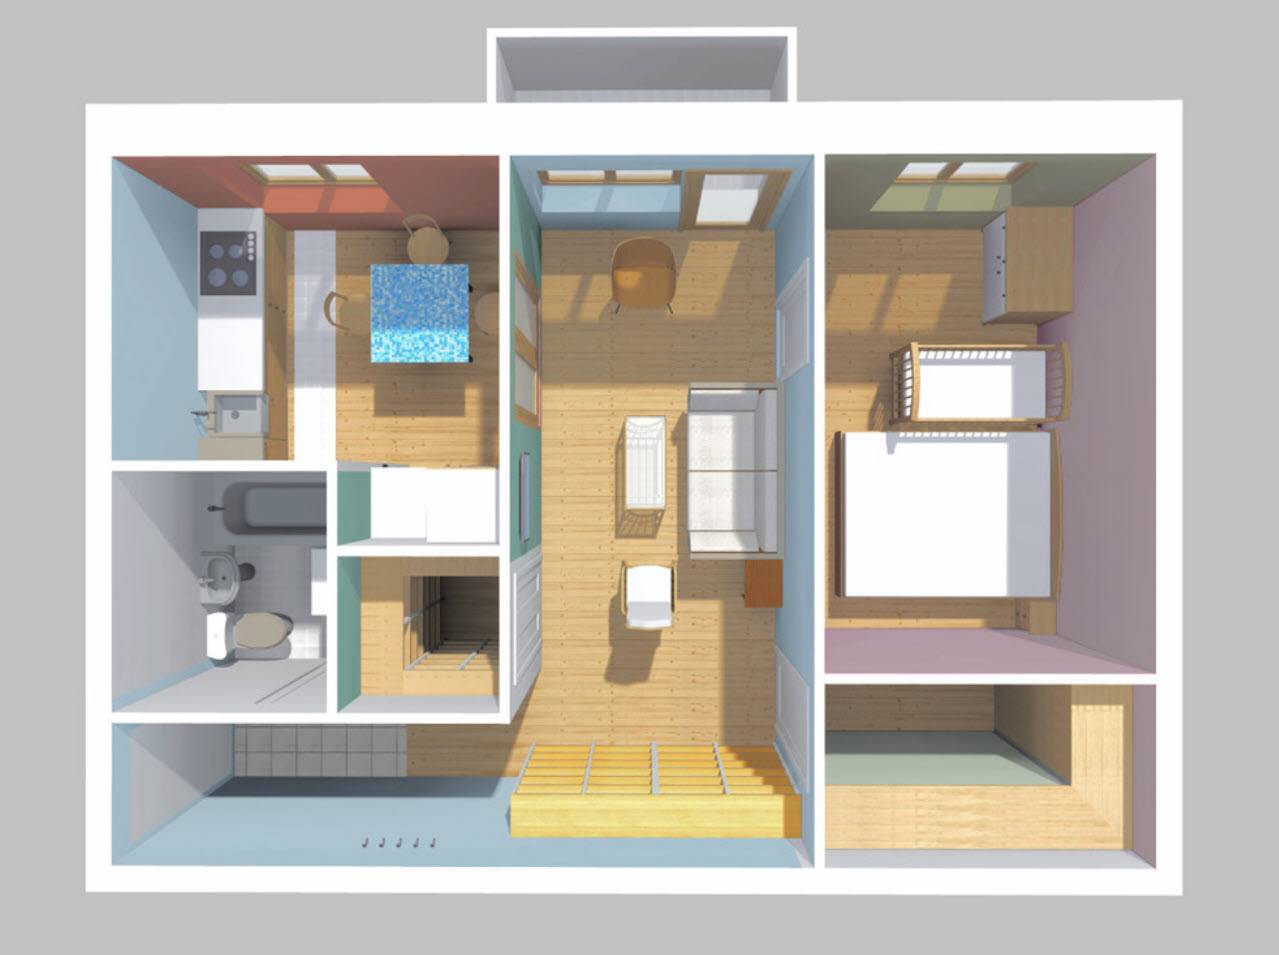 Дизайн хрущевки с перепланировкой и без неё: варианты зонирования квартиры без перемещения стен и с объединением помещений